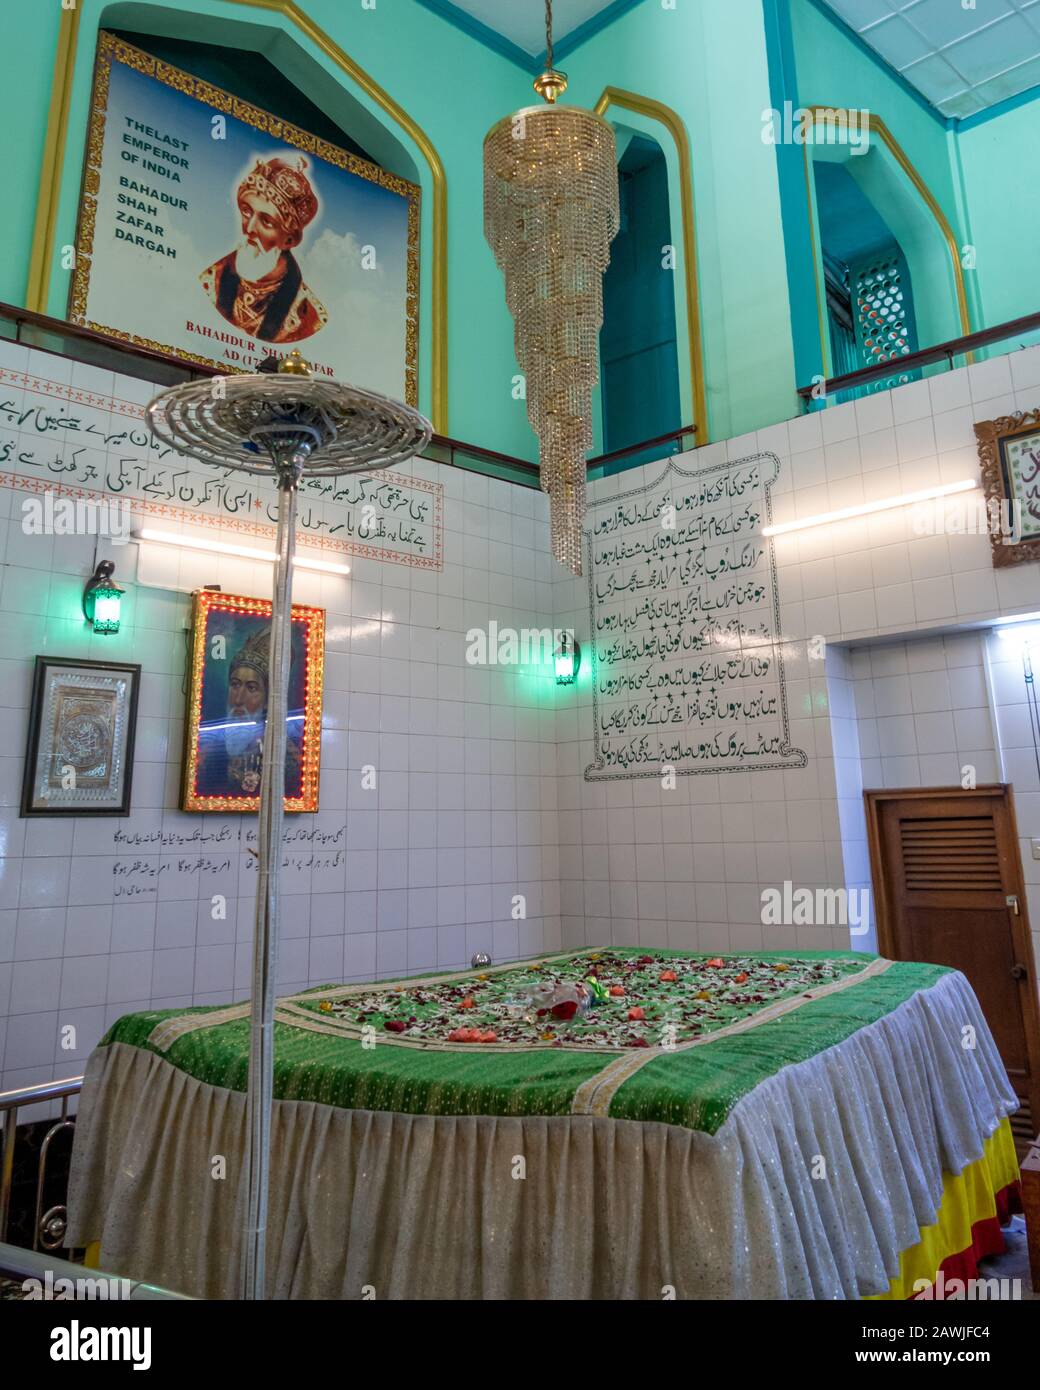 Yangon, MYANMAR - 23 GENNAIO 2020: Dargah di Bahadur Shah Zafar, Memorial Hall per l'ultimo imperatore Moghul dell'India Foto Stock